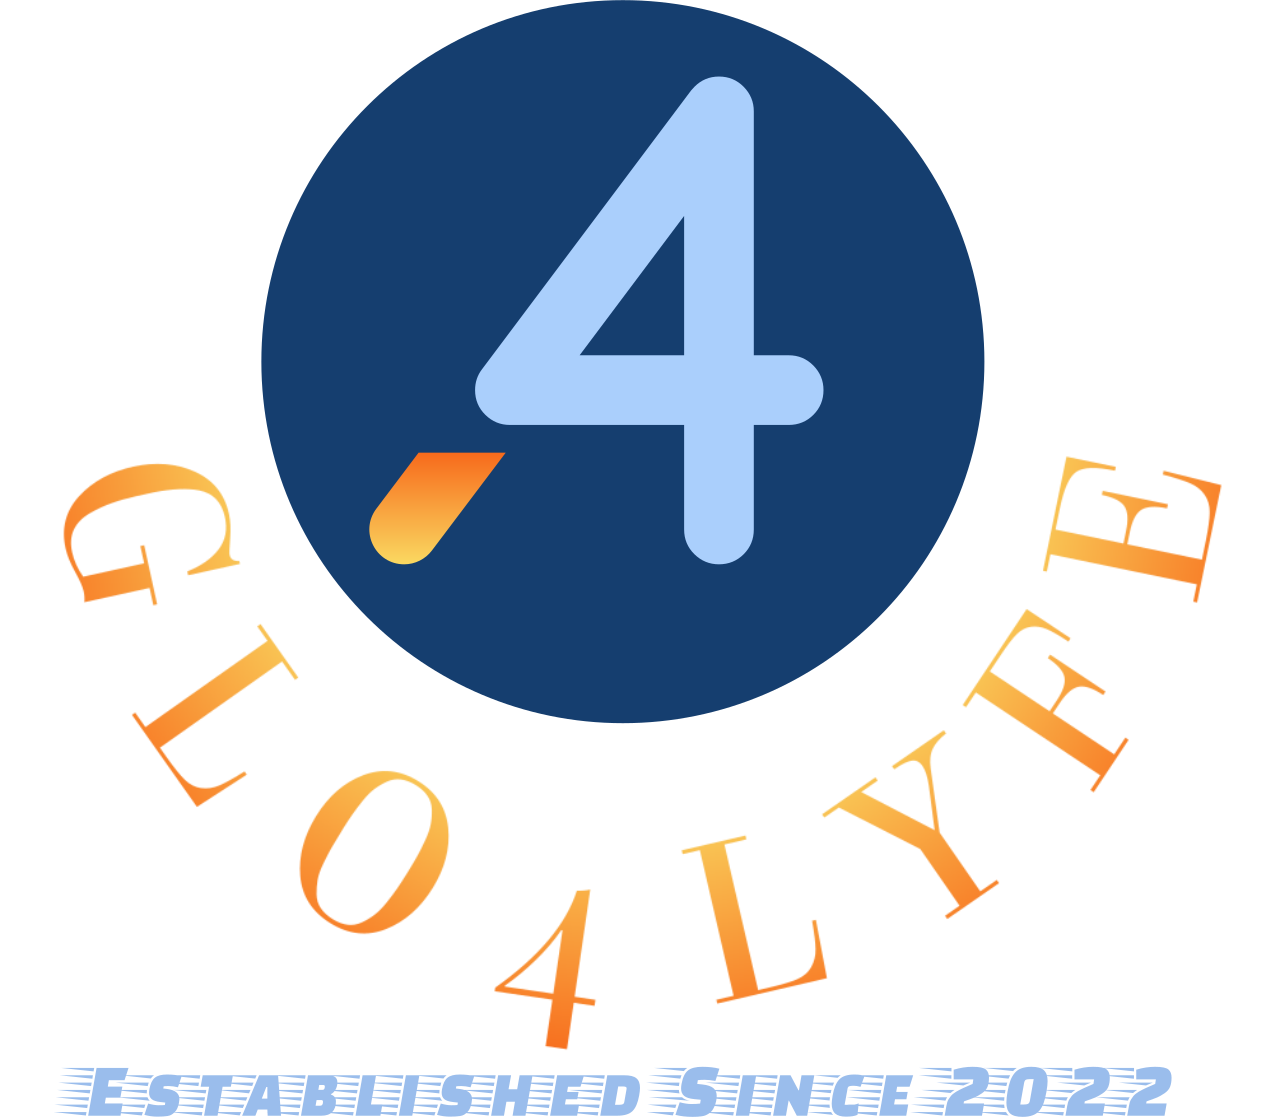 GLO4LYFE's logo